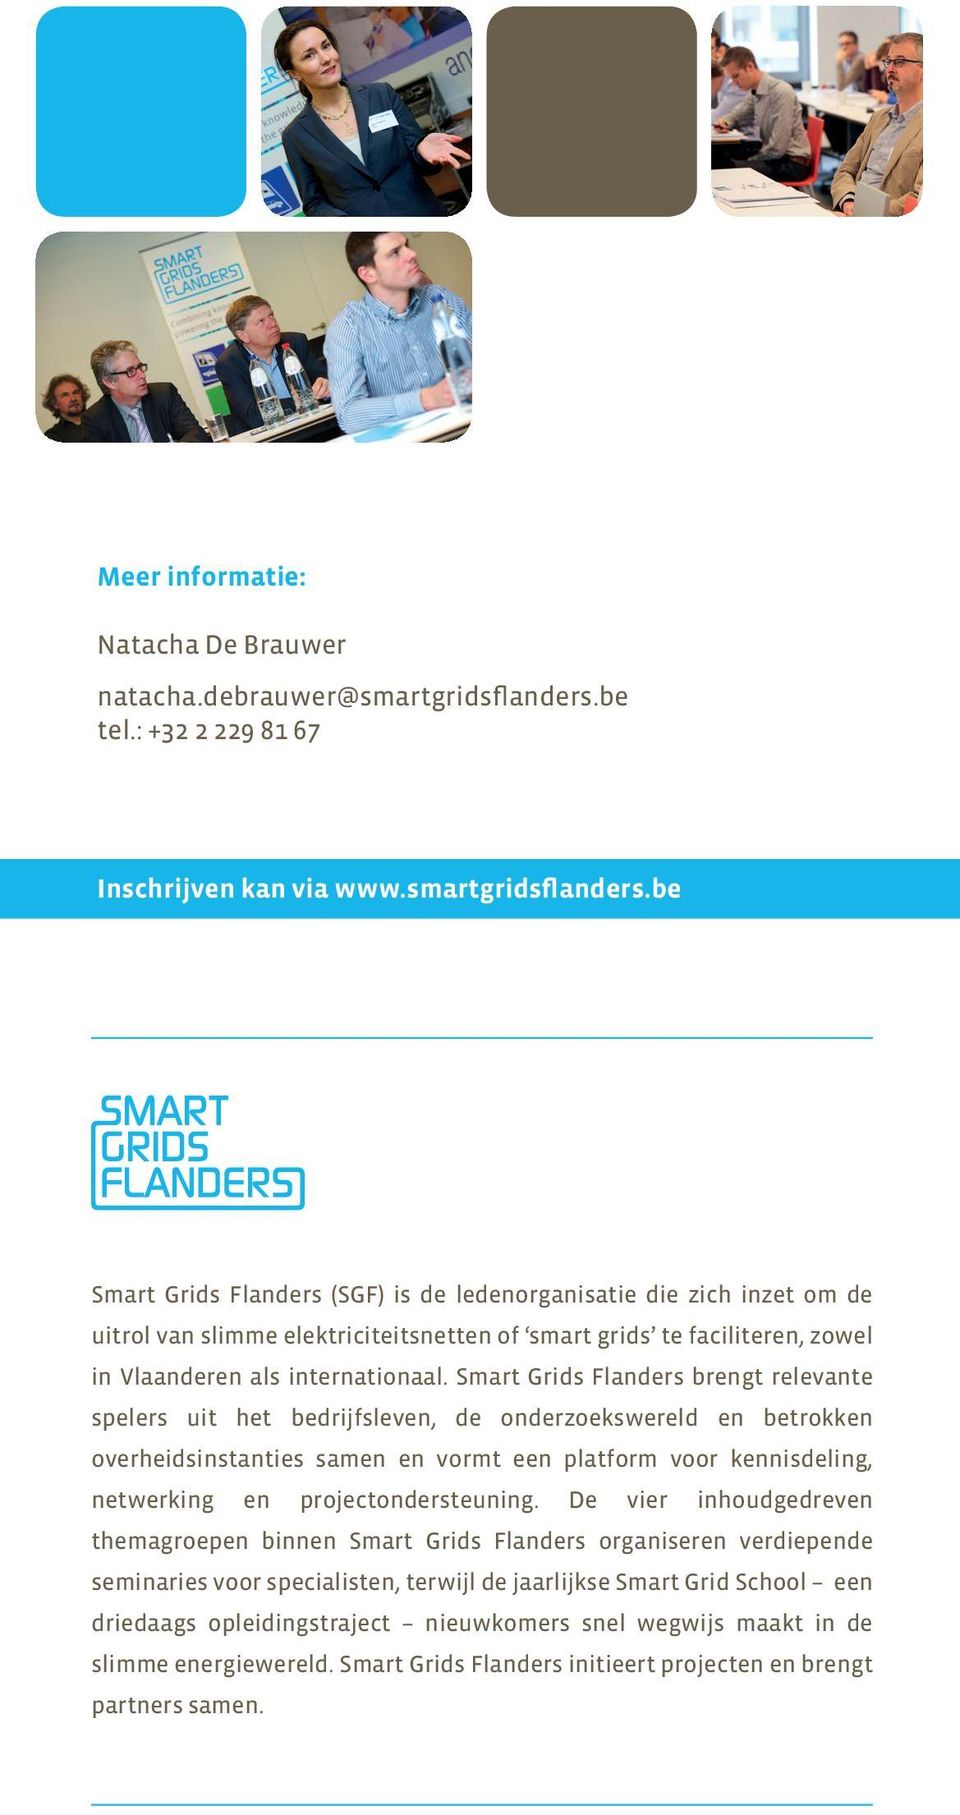 be Smart Grids Flanders (SGF) is de ledenorganisatie die zich inzet om de uitrol van slimme elektriciteitsnetten of smart grids te faciliteren, zowel in Vlaanderen als internationaal.